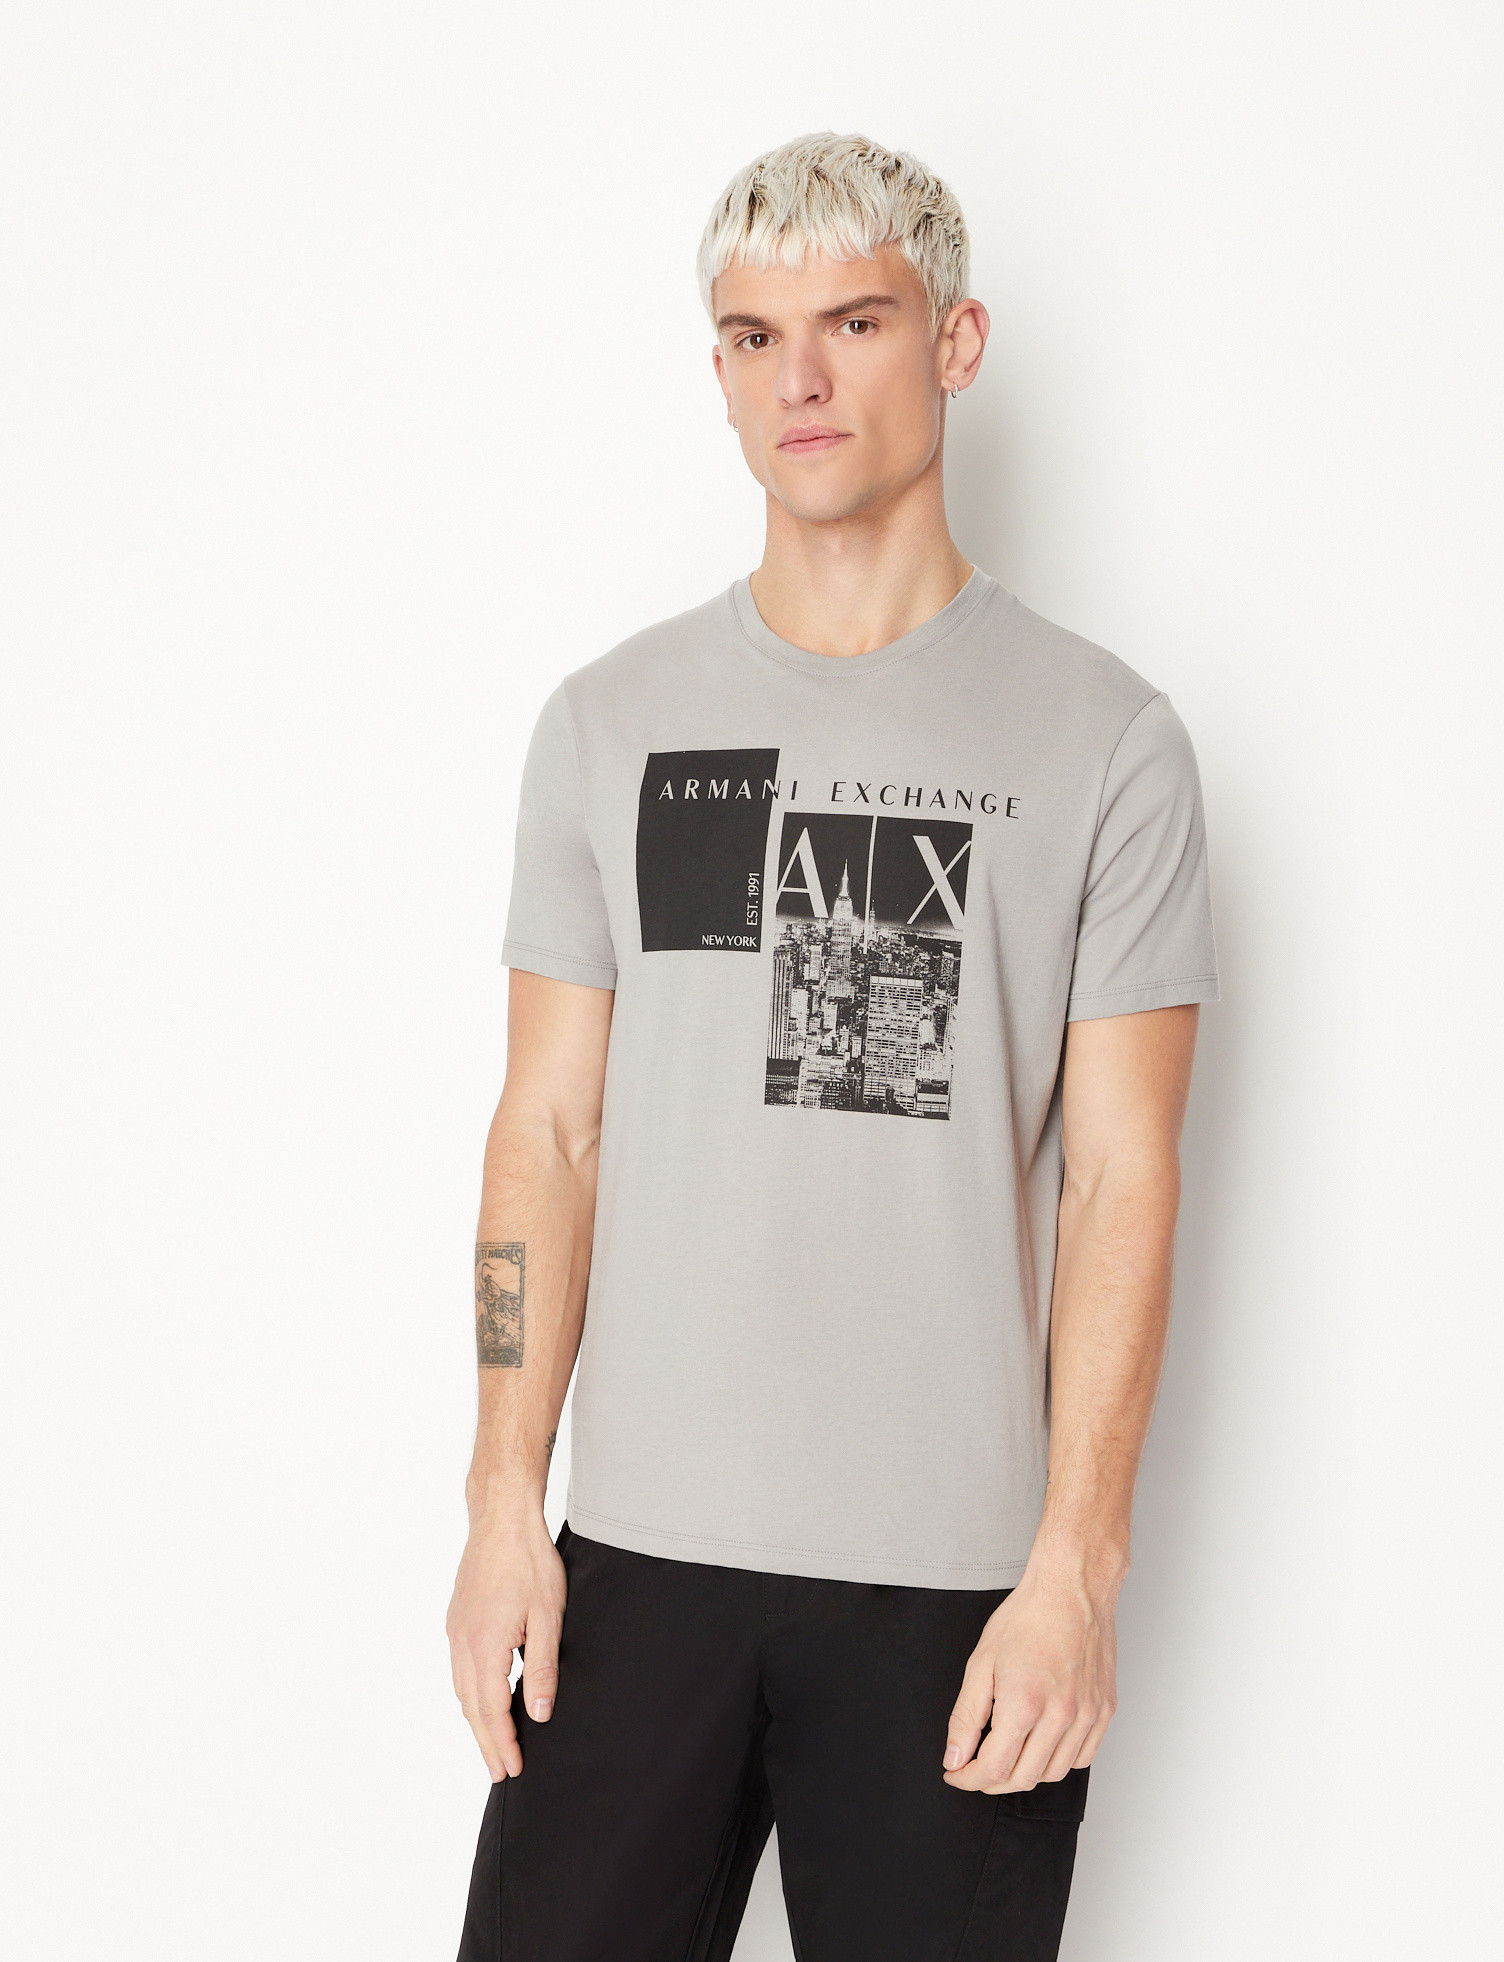 Armani Exchange - Regular fit graphic print T-shirt, Dark Grey, large image number 1